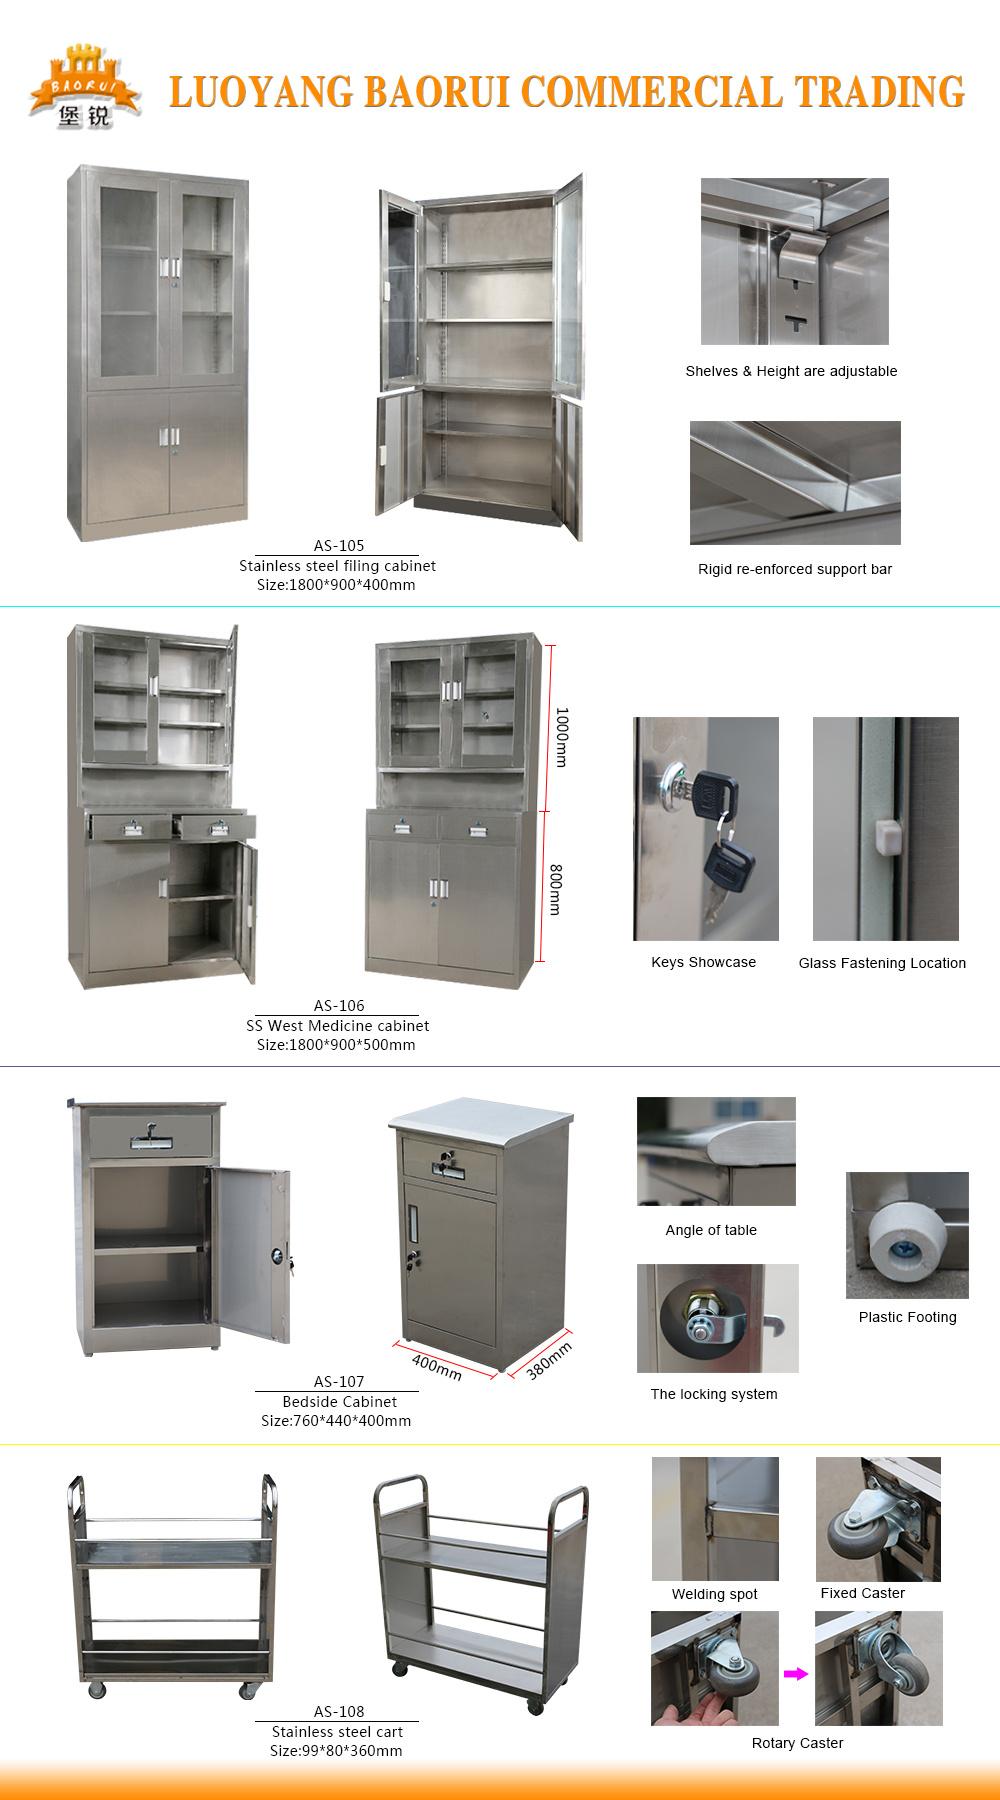 Hospital Furniture Metal Bedside Locker Steel Medical Storage Cabinet on Wheel